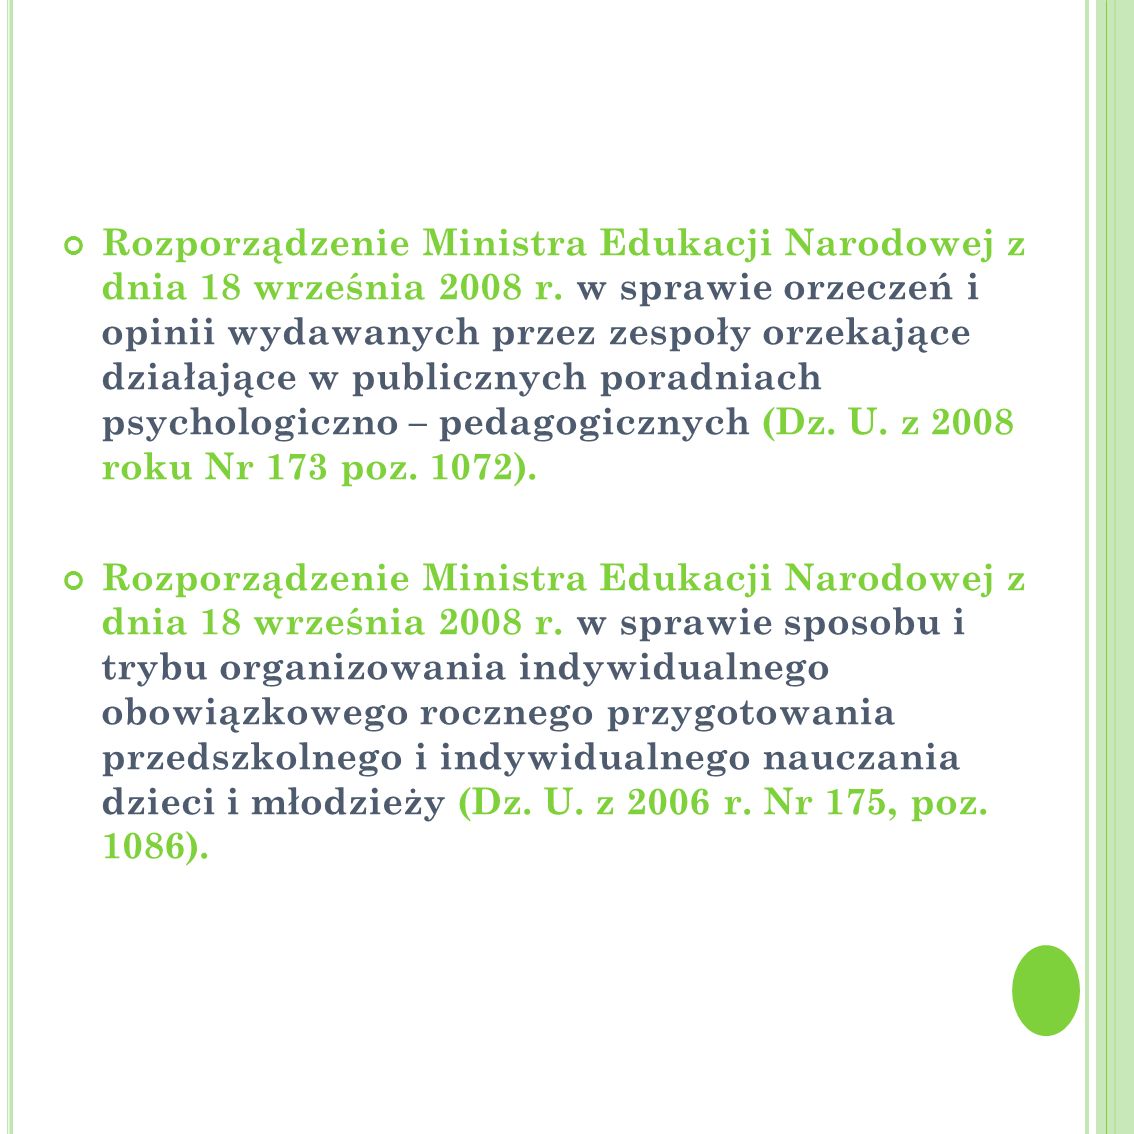 Rozporządzenie Ministra Edukacji Narodowej z dnia 18 września 2008 r